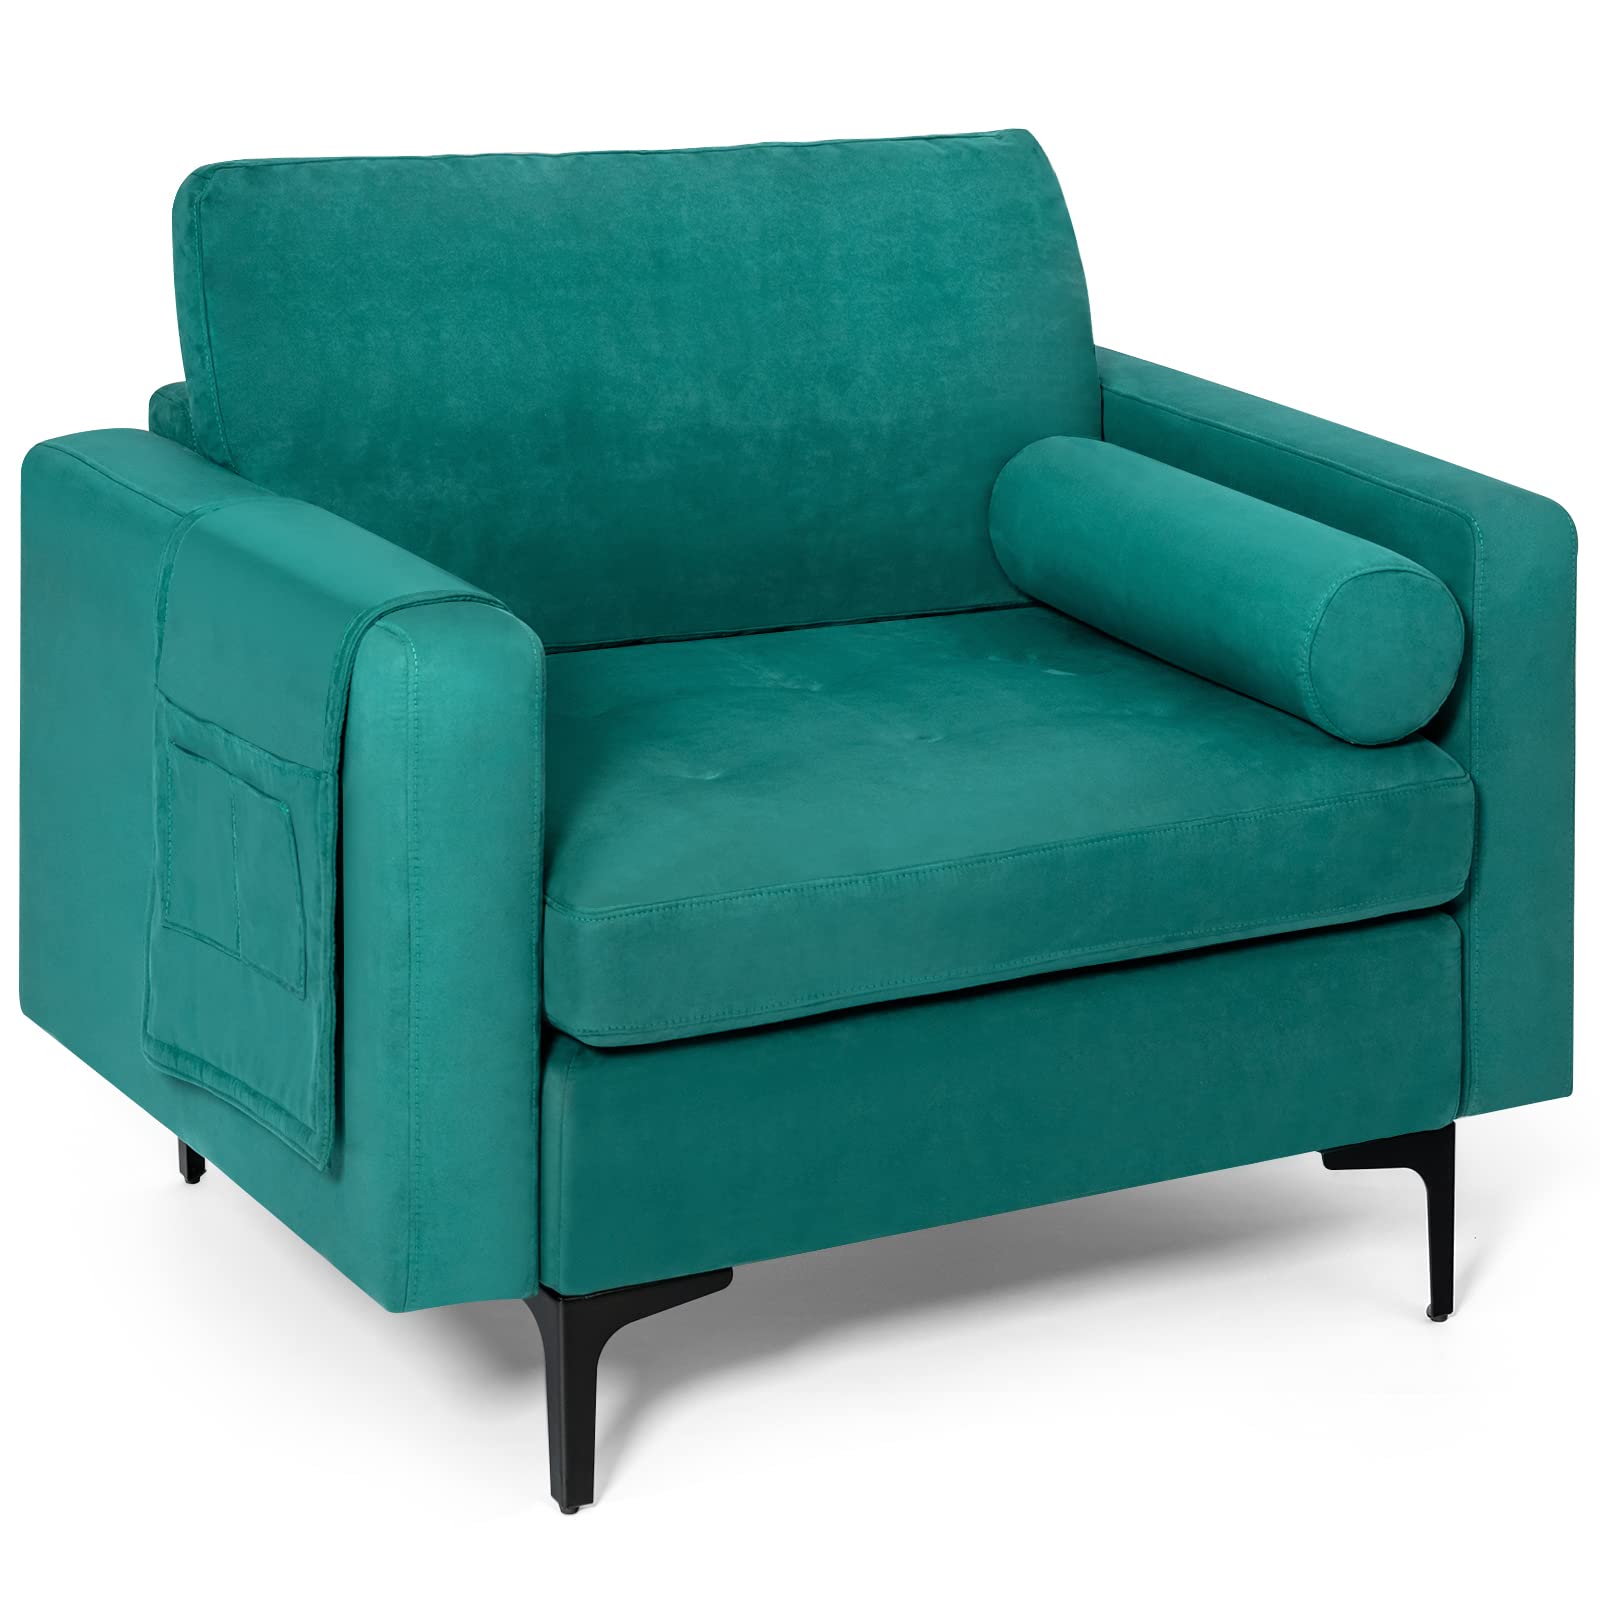 Giantex Sofa Chair, Accent Armchair w/Comfy Cushion